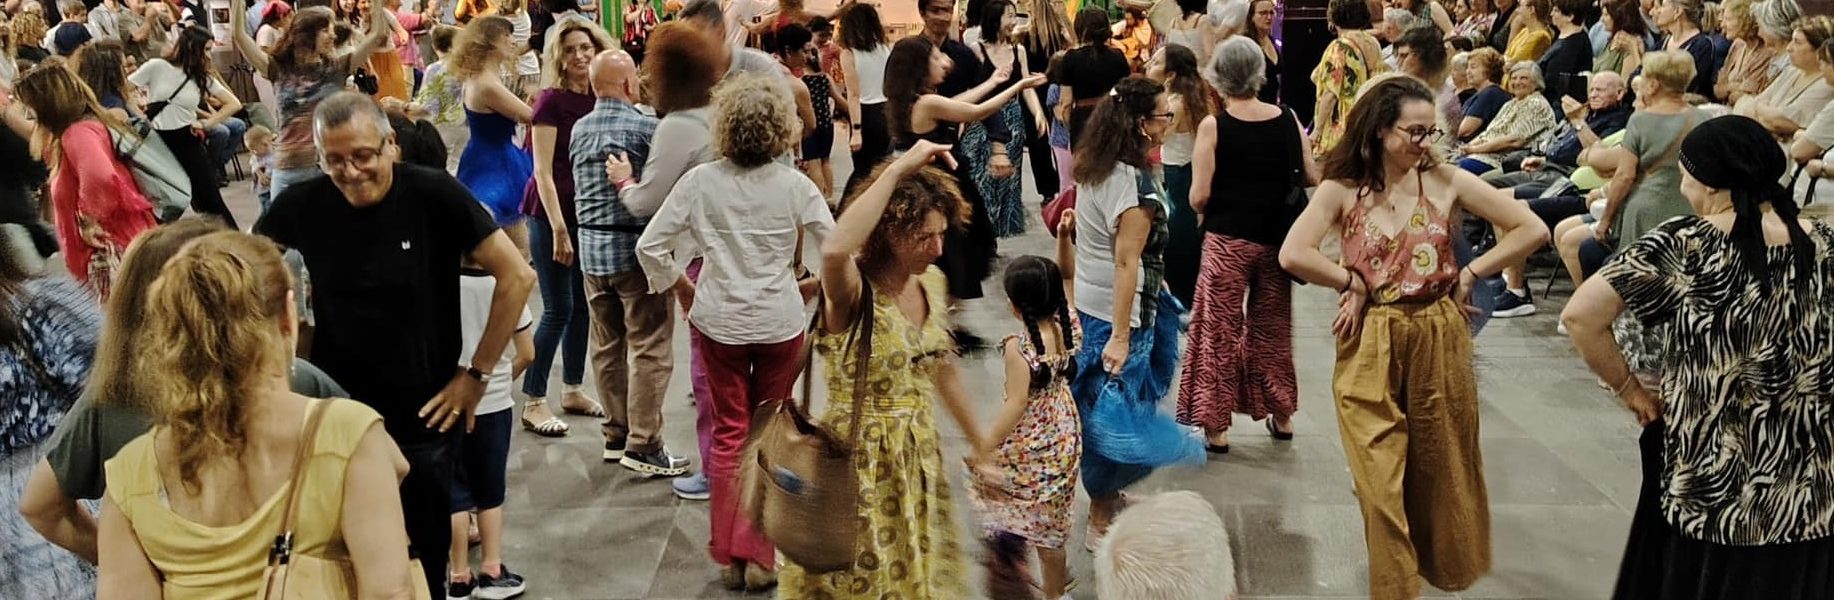 Nella foto si vedono persone che ballano in piazza Oldrini